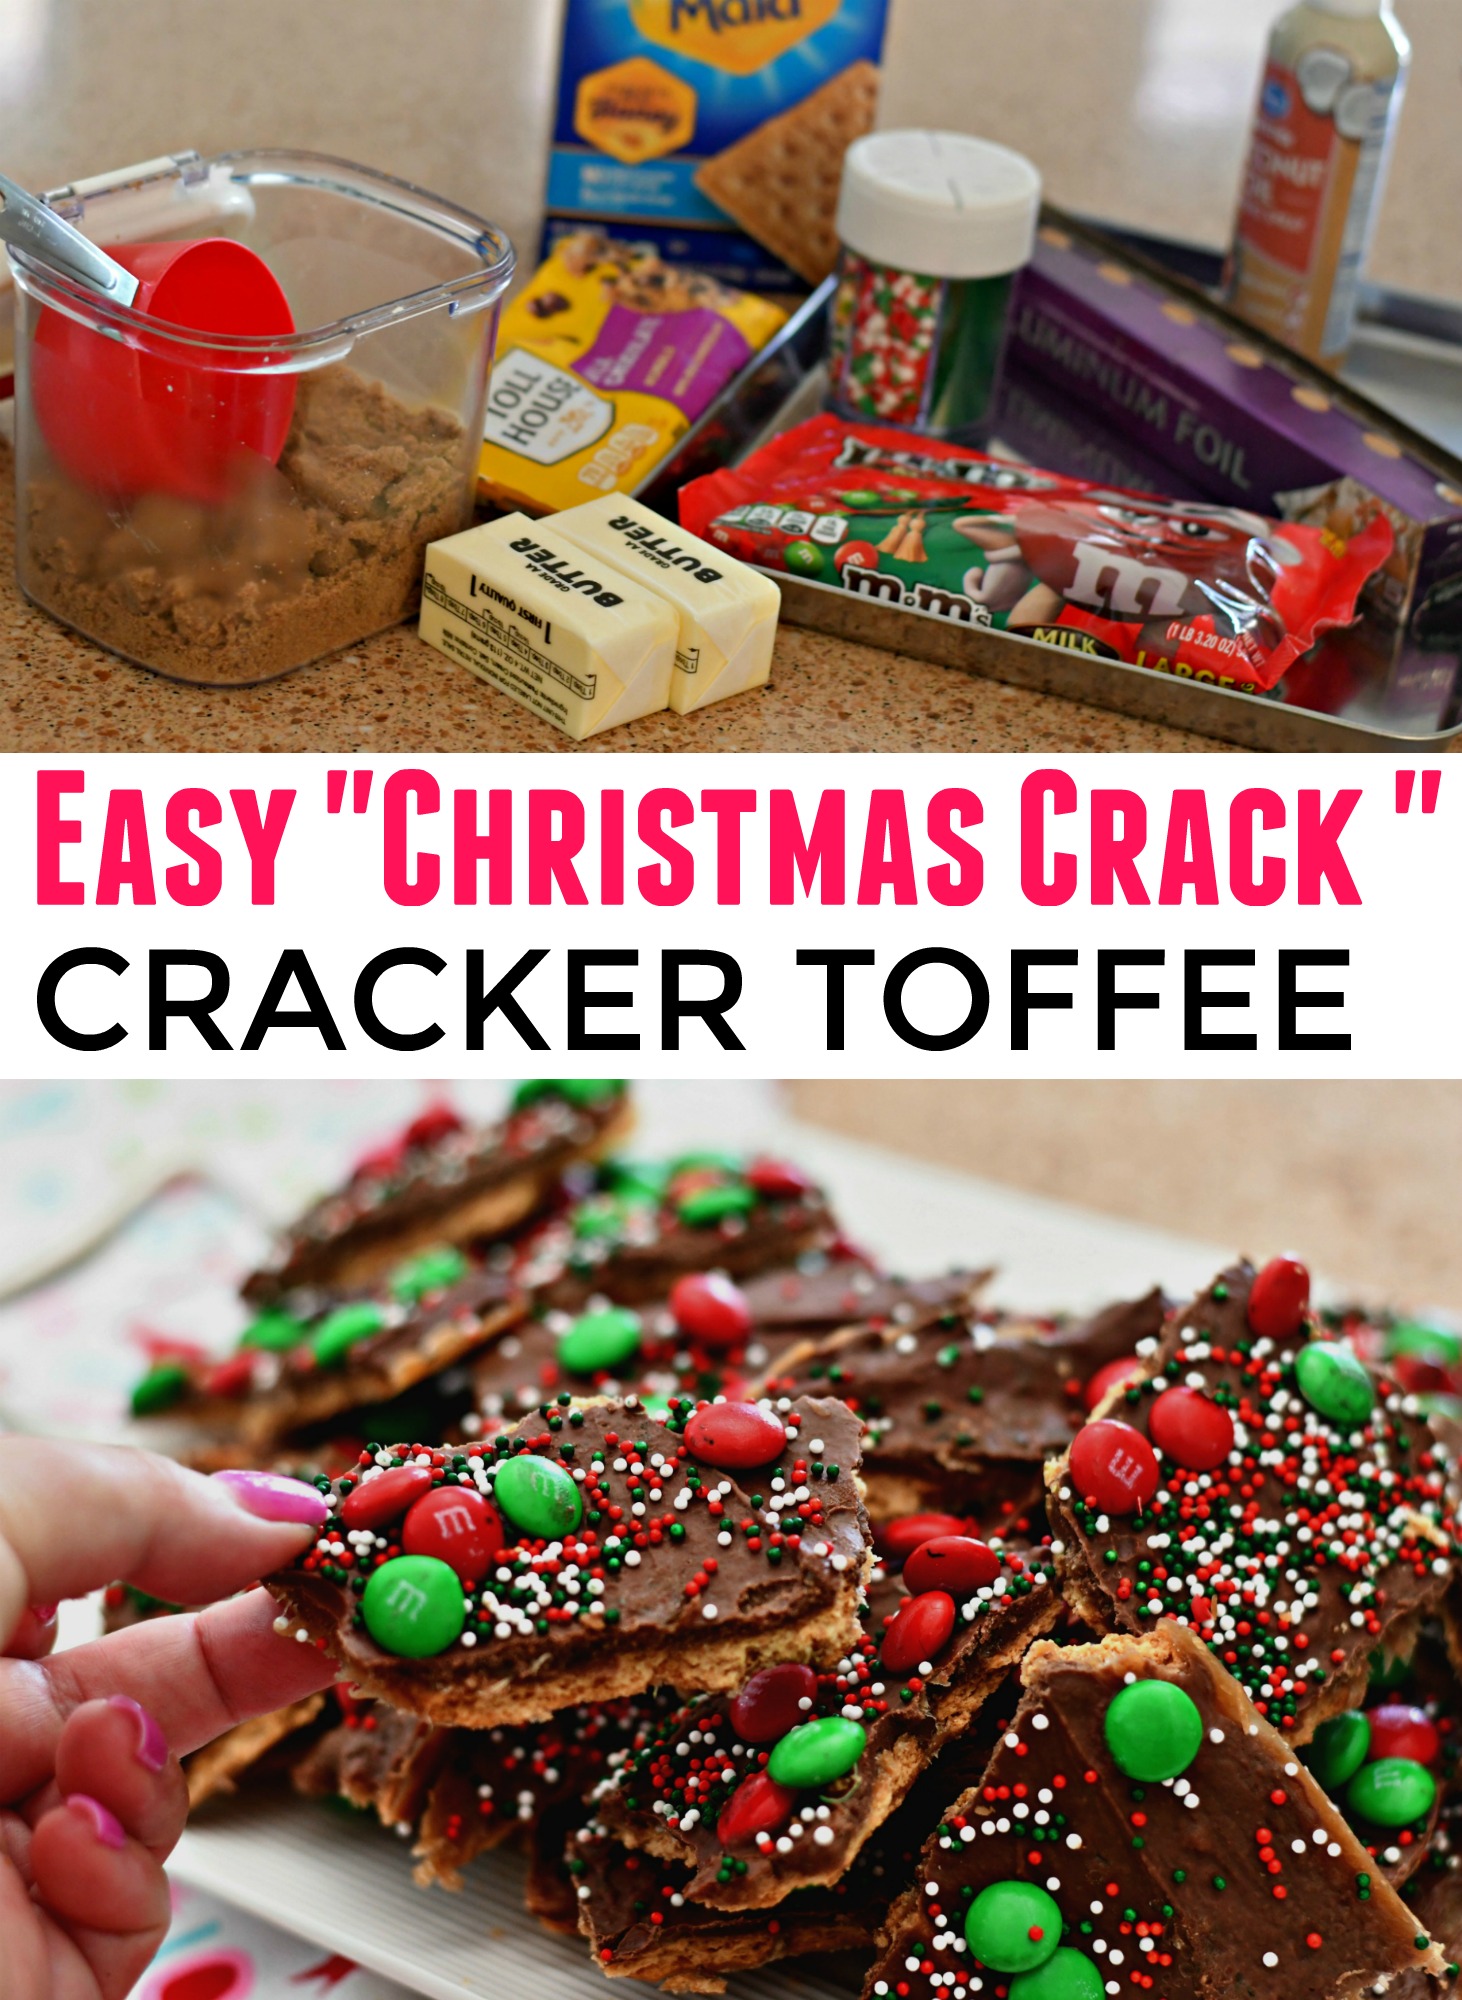 christmas crack recipes